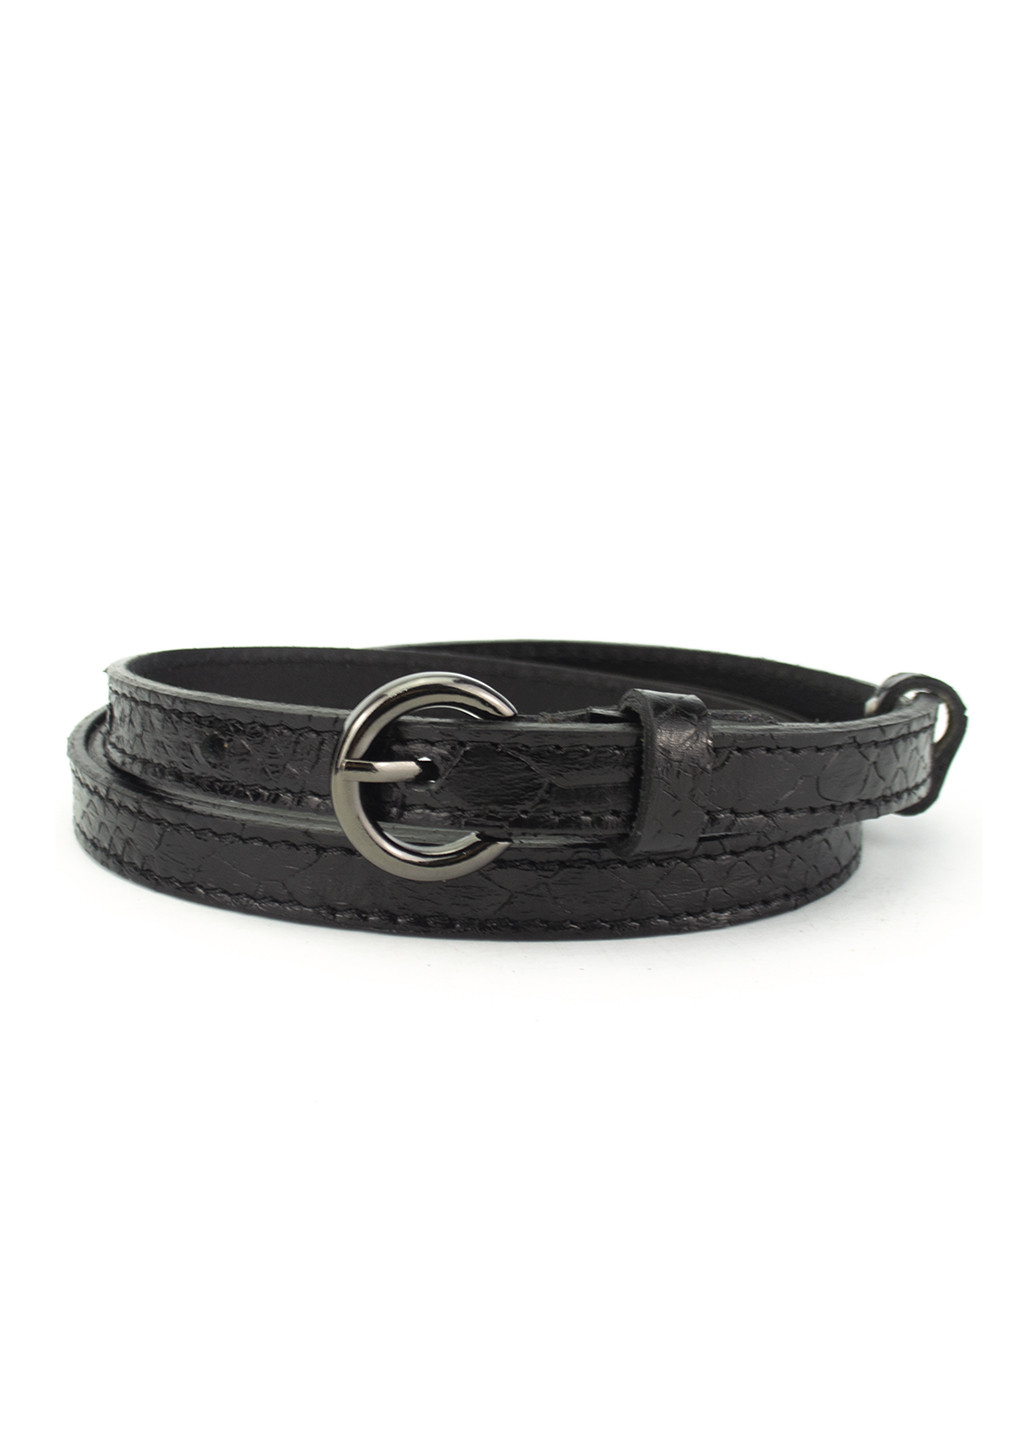 Ремень кожаный женский узкий черный питон PS-1553 black (105 см) Puos (249059145)